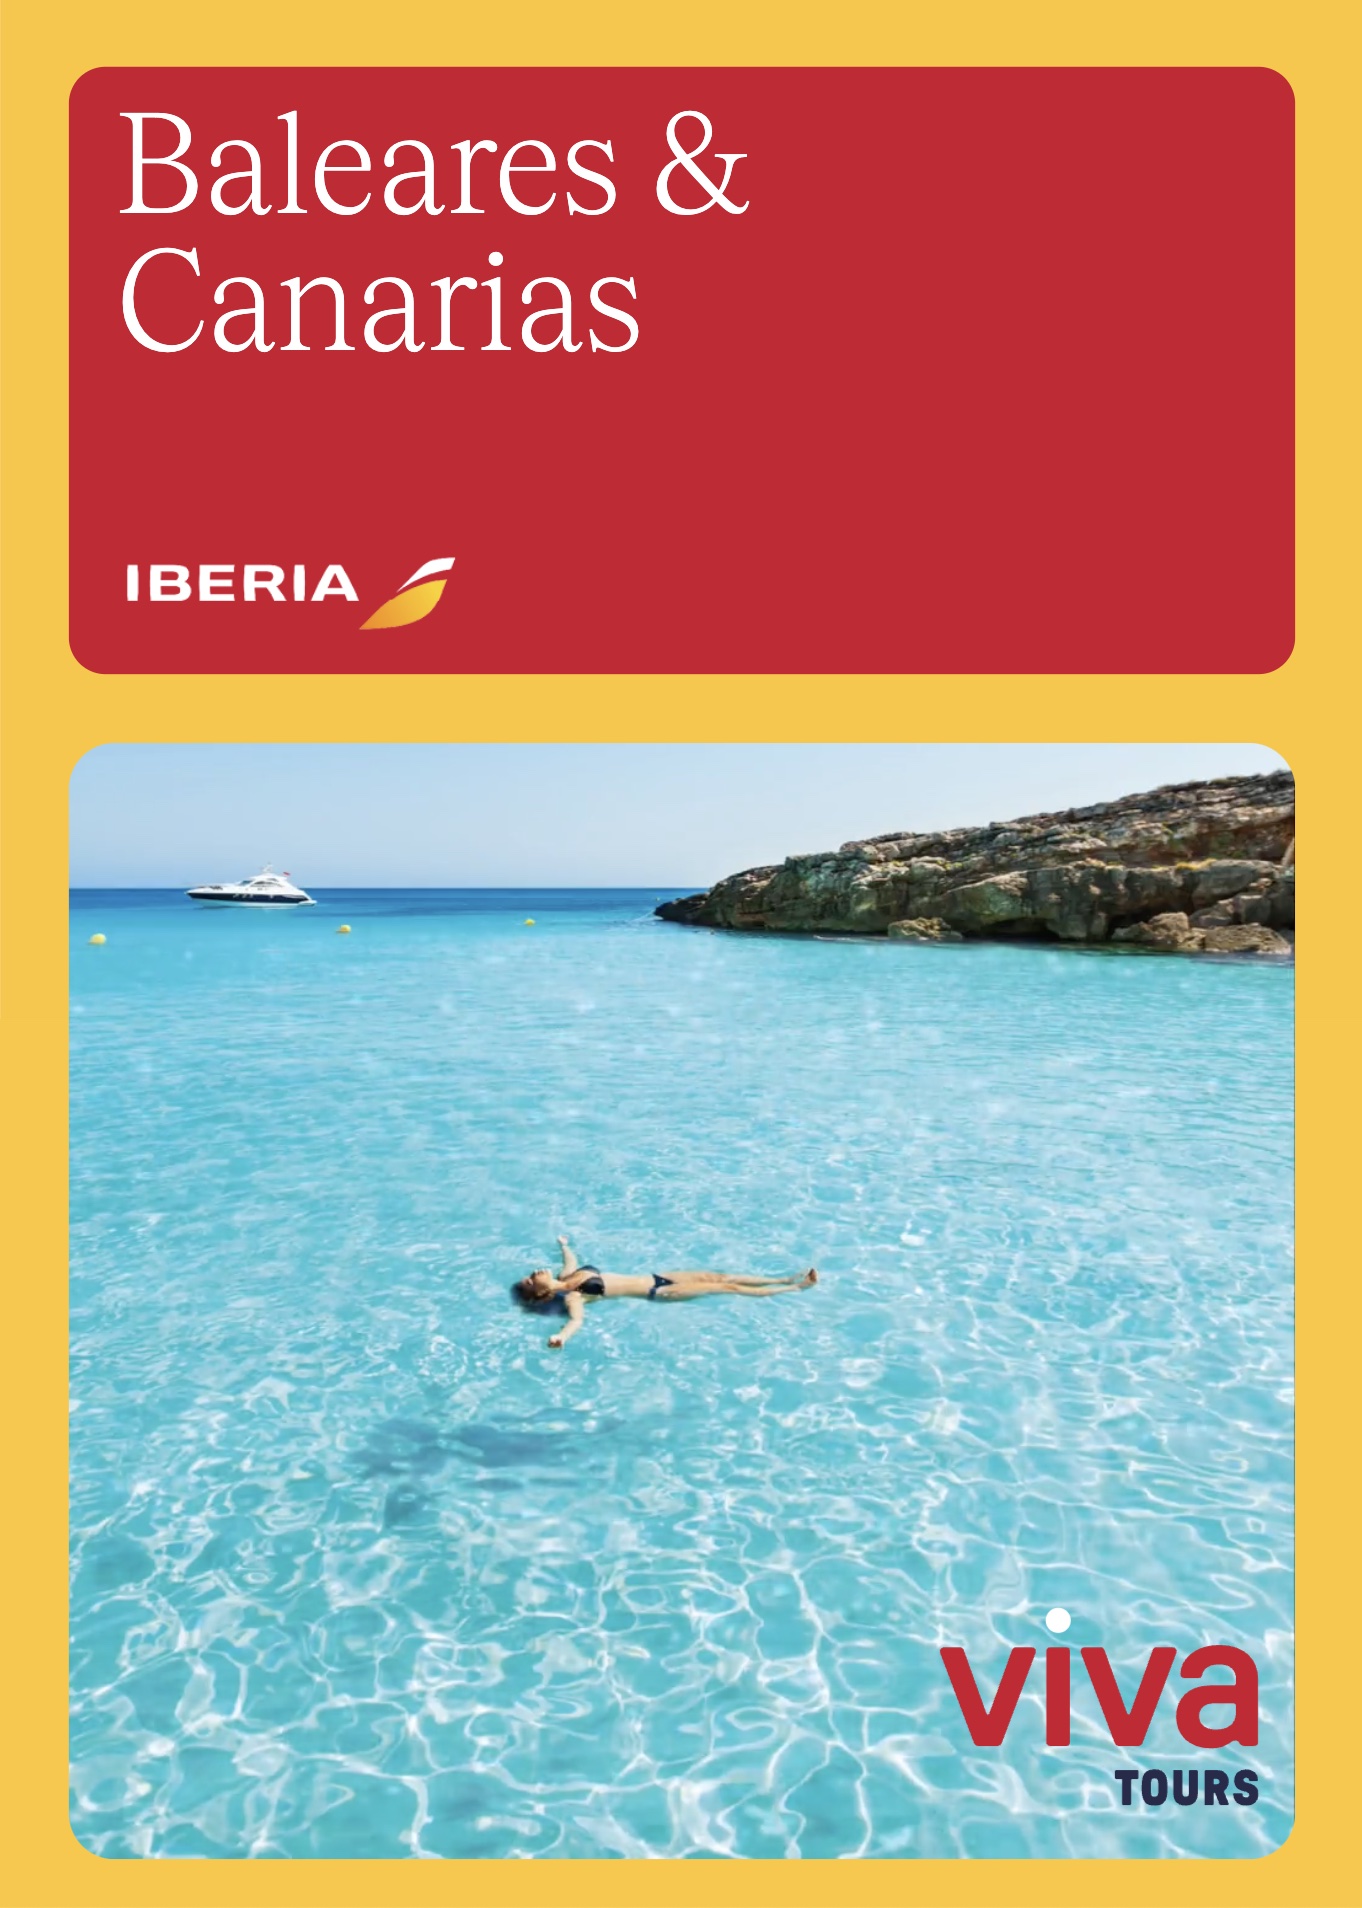 Viva Tours eMagazines. Catálogo interactivo digital destino Baleares y Canarias